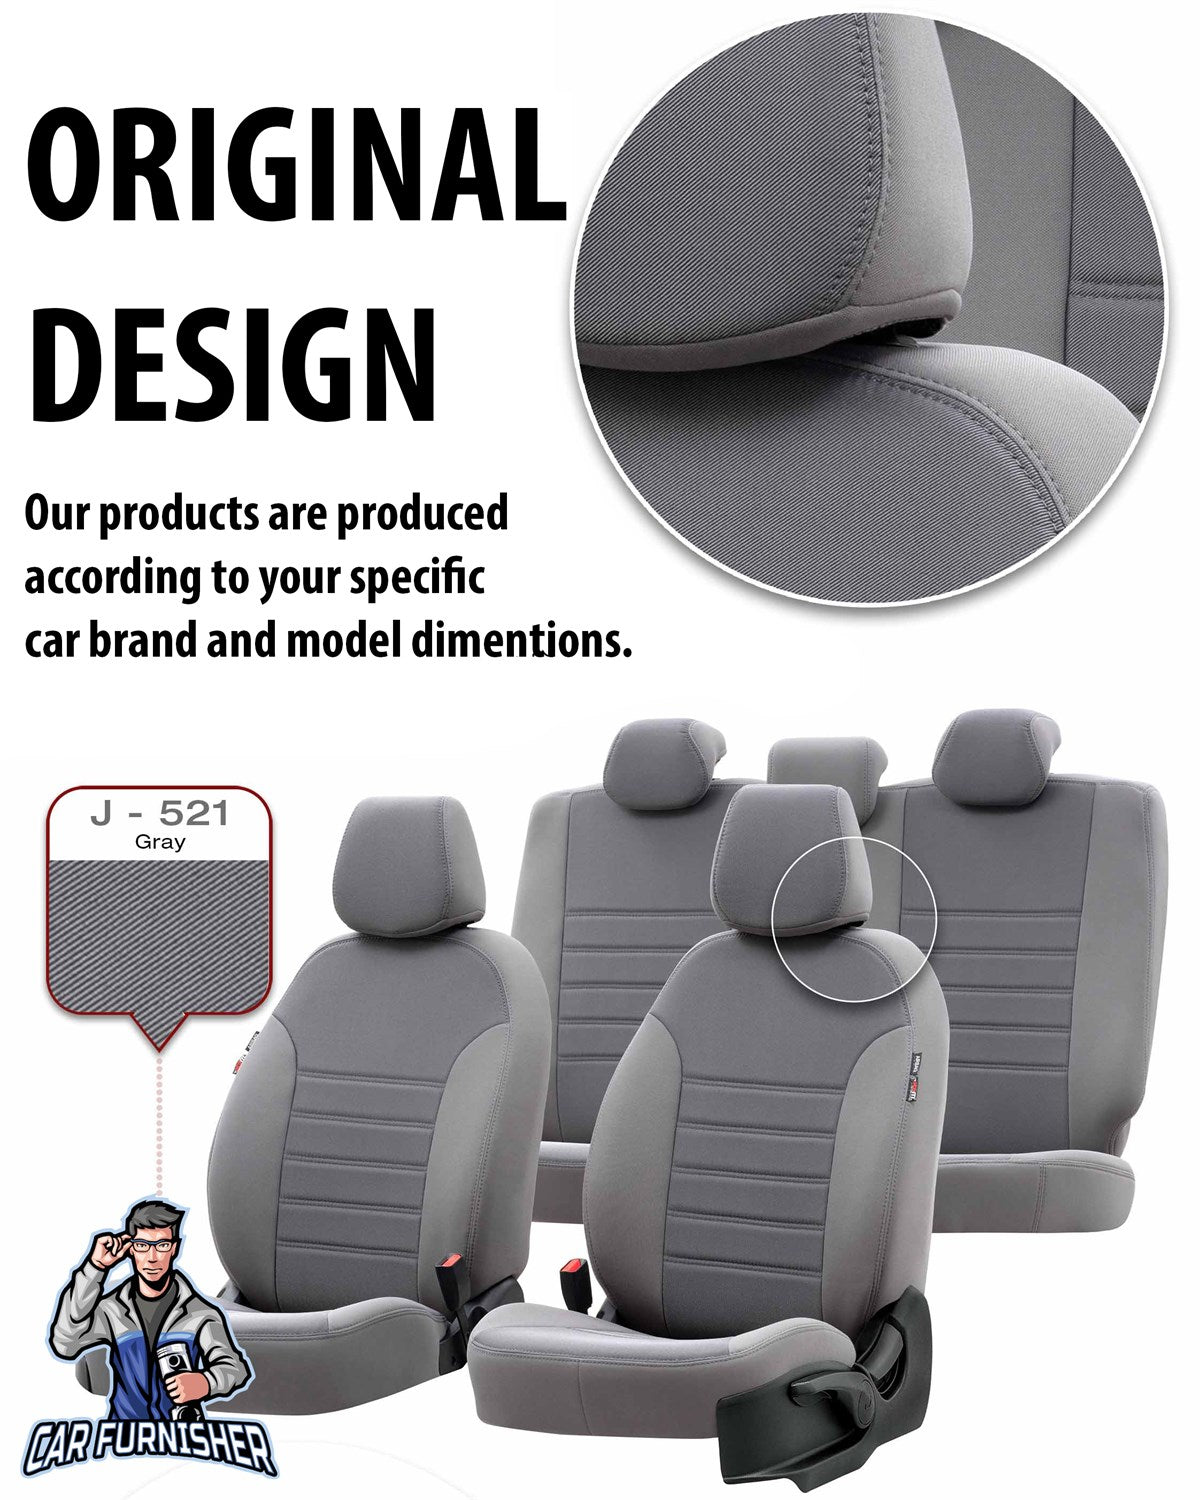 Renault Scenic Seat Covers Original Jacquard Design Beige Jacquard Fabric